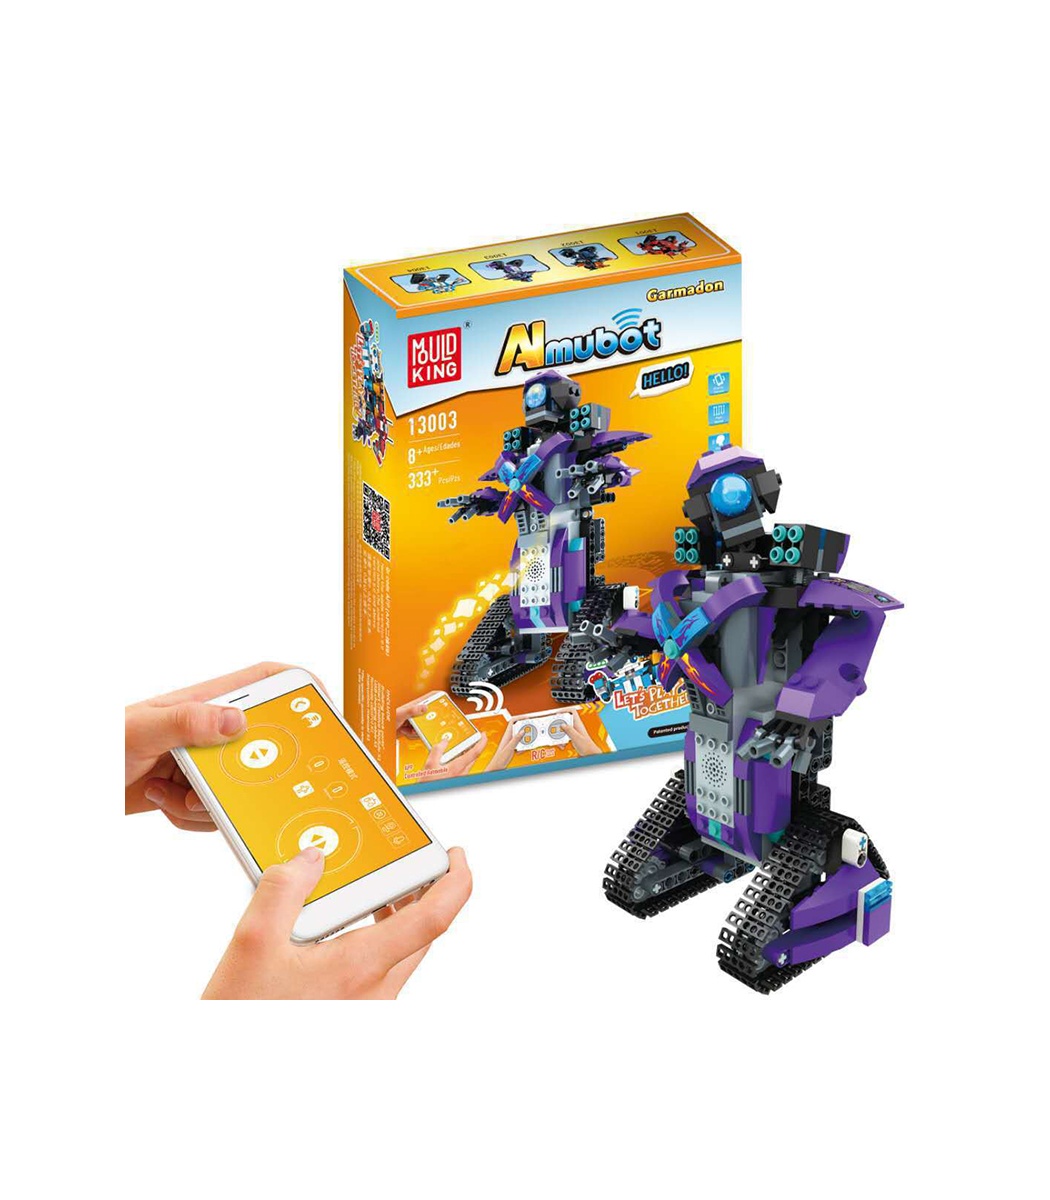 https://www.buildingtoystore.com/14751-superlarge_default/mould-king-13003-almubot-garmadon-robot-blocs-de-construction-ensemble-de-jouets.jpg